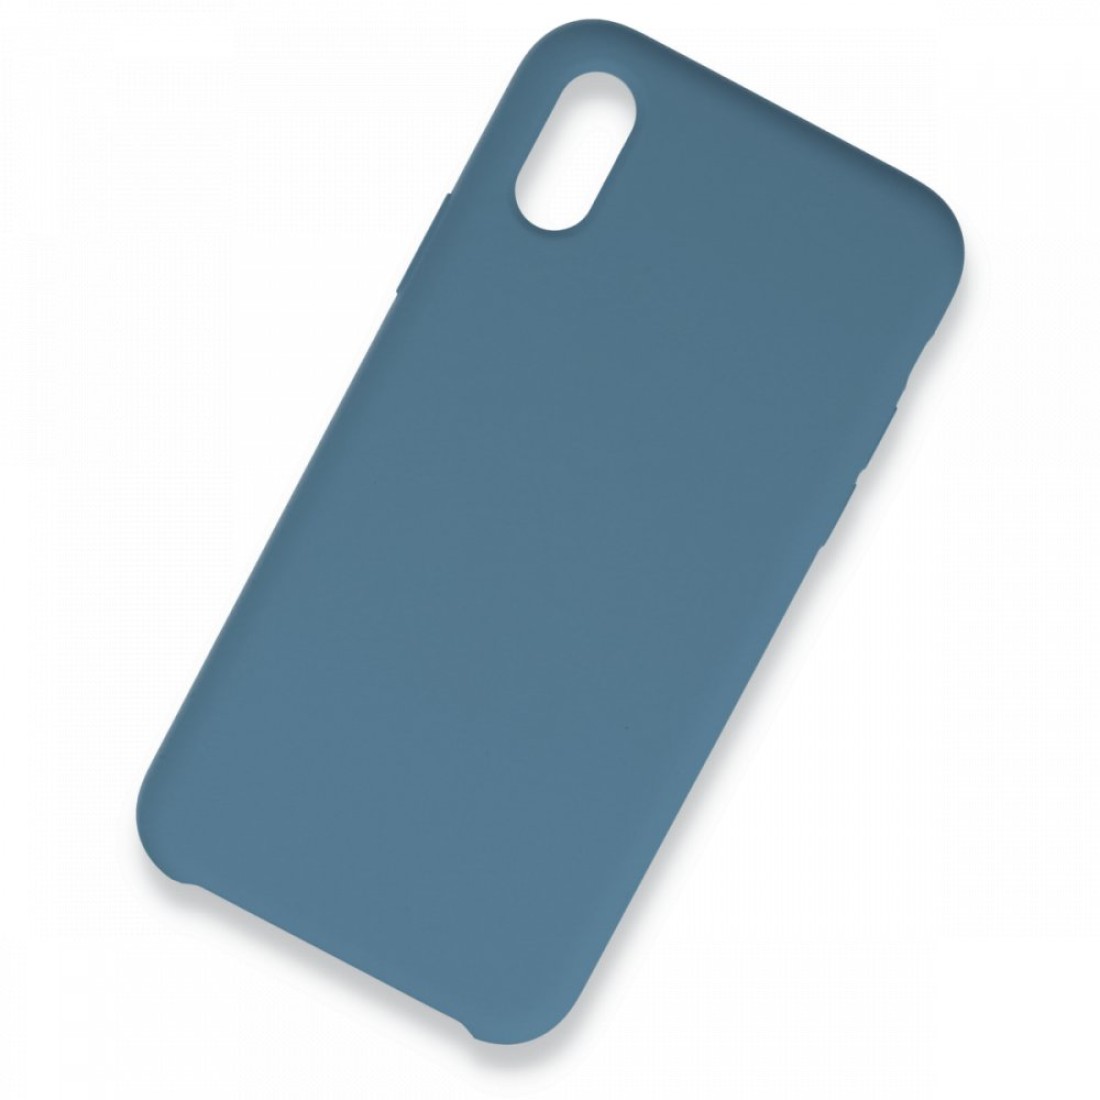 Apple iPhone XS Max Kılıf Lansman Legant Silikon - Açık Mavi